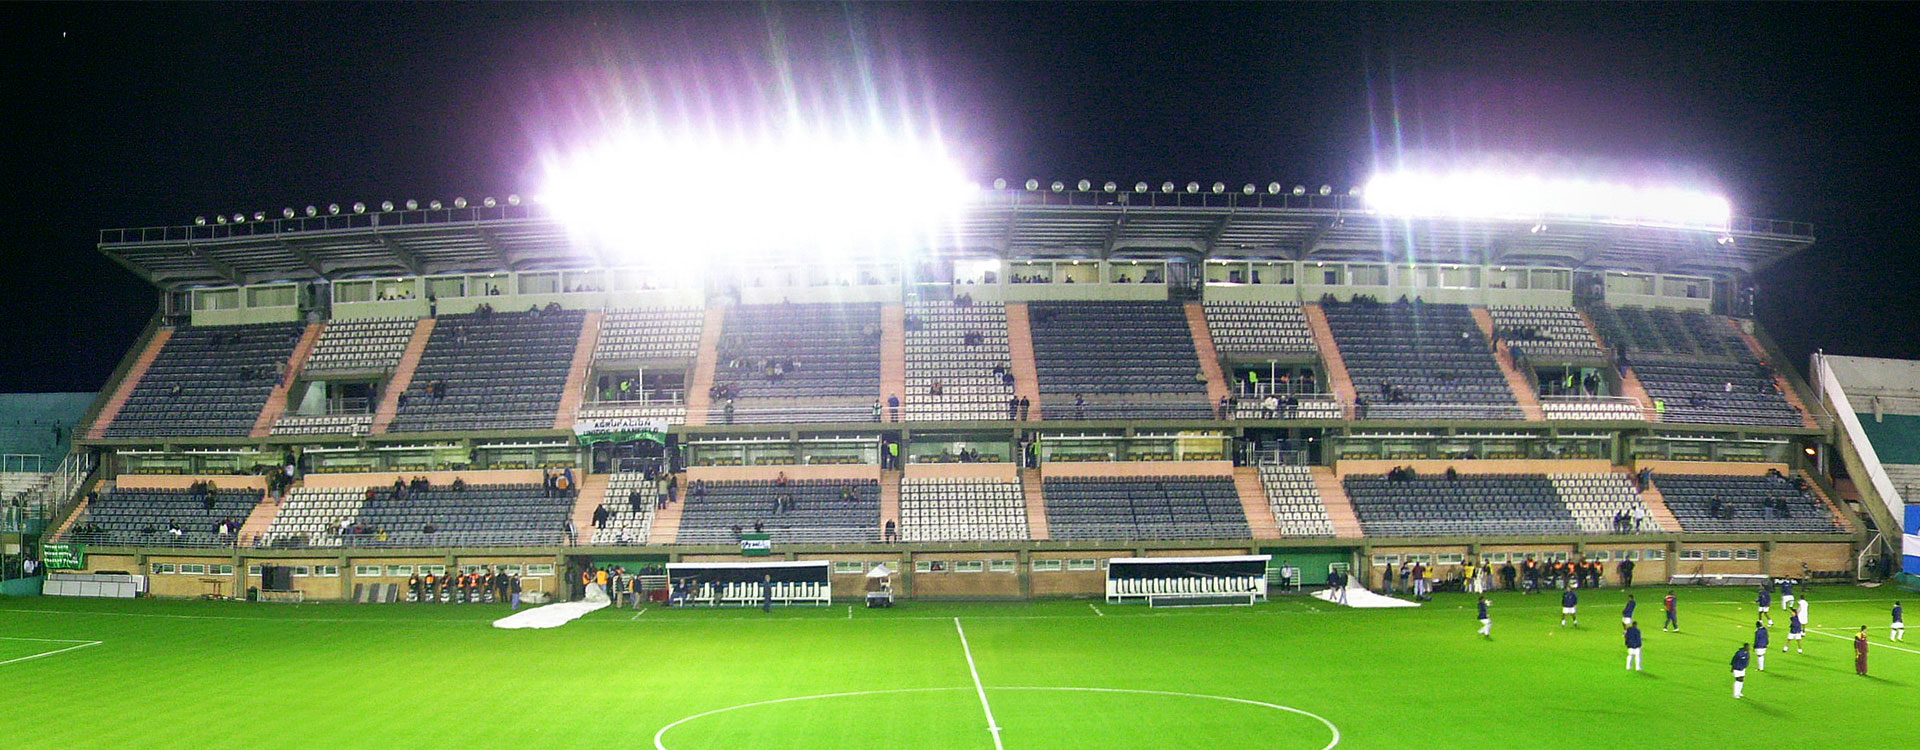 Estadio Club Atlético Banfield - Rassegna® - Arquitectura ...